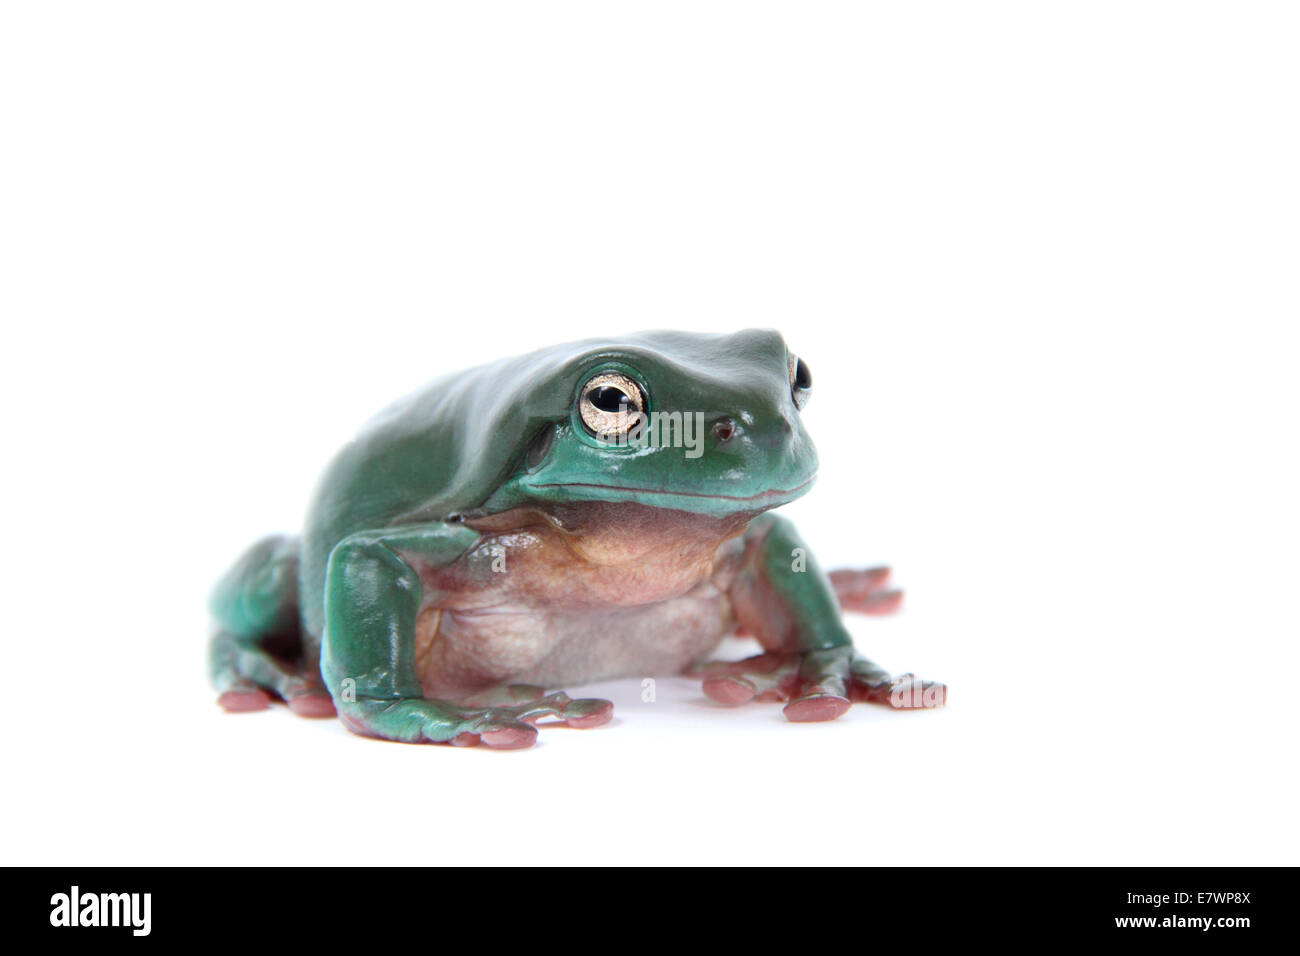 Dainty Green Tree Frog (Litoria gracilenta) Stock Photo